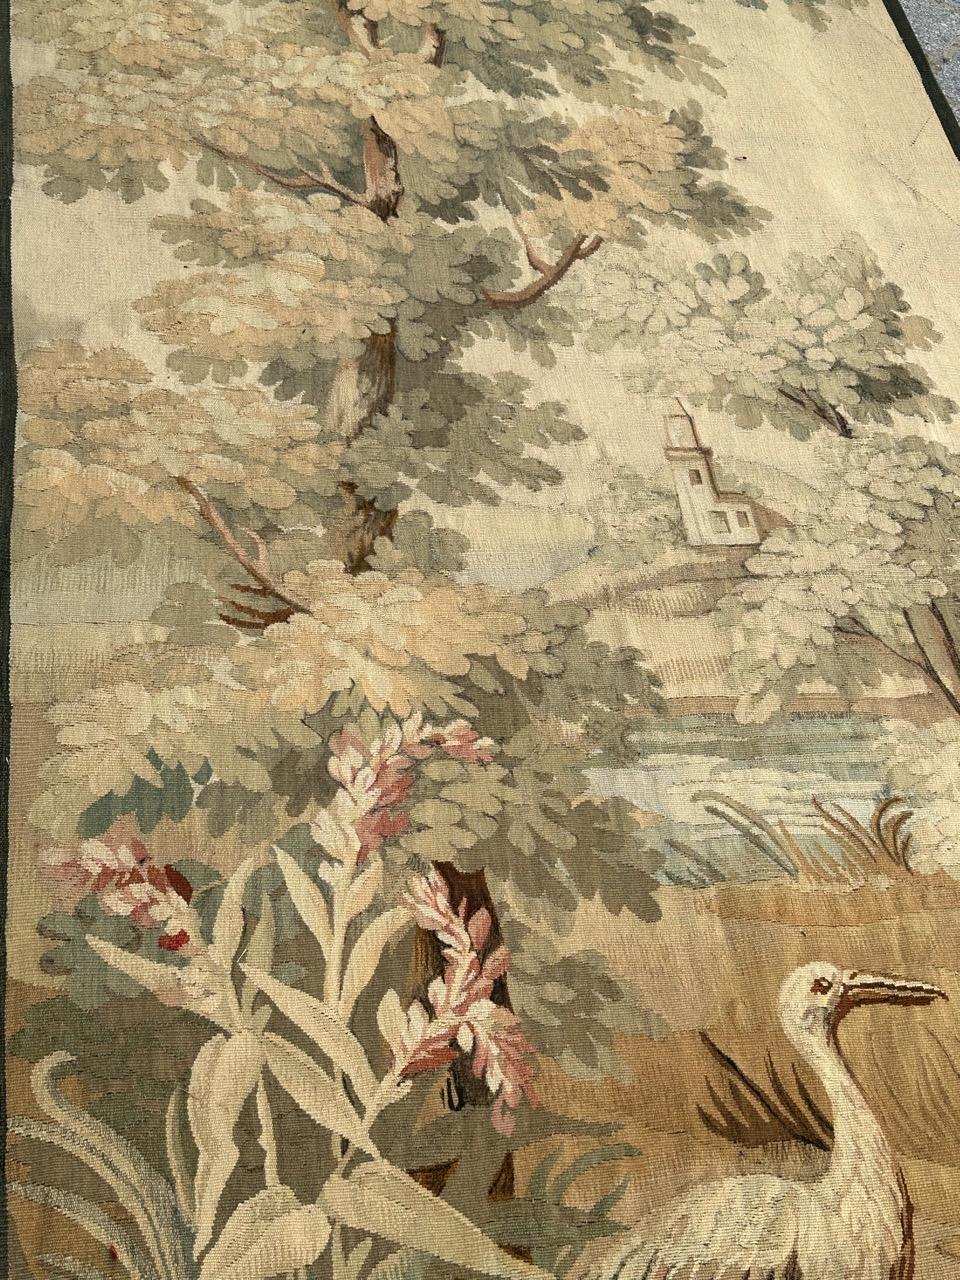 Très belle et fine tapisserie d'Aubusson avec un joli design d'oiseau dans la nature, et de belles couleurs, entièrement et finement tissée à la main avec de la laine et de la soie, dans les ateliers d'Aubusson.

✨✨✨
